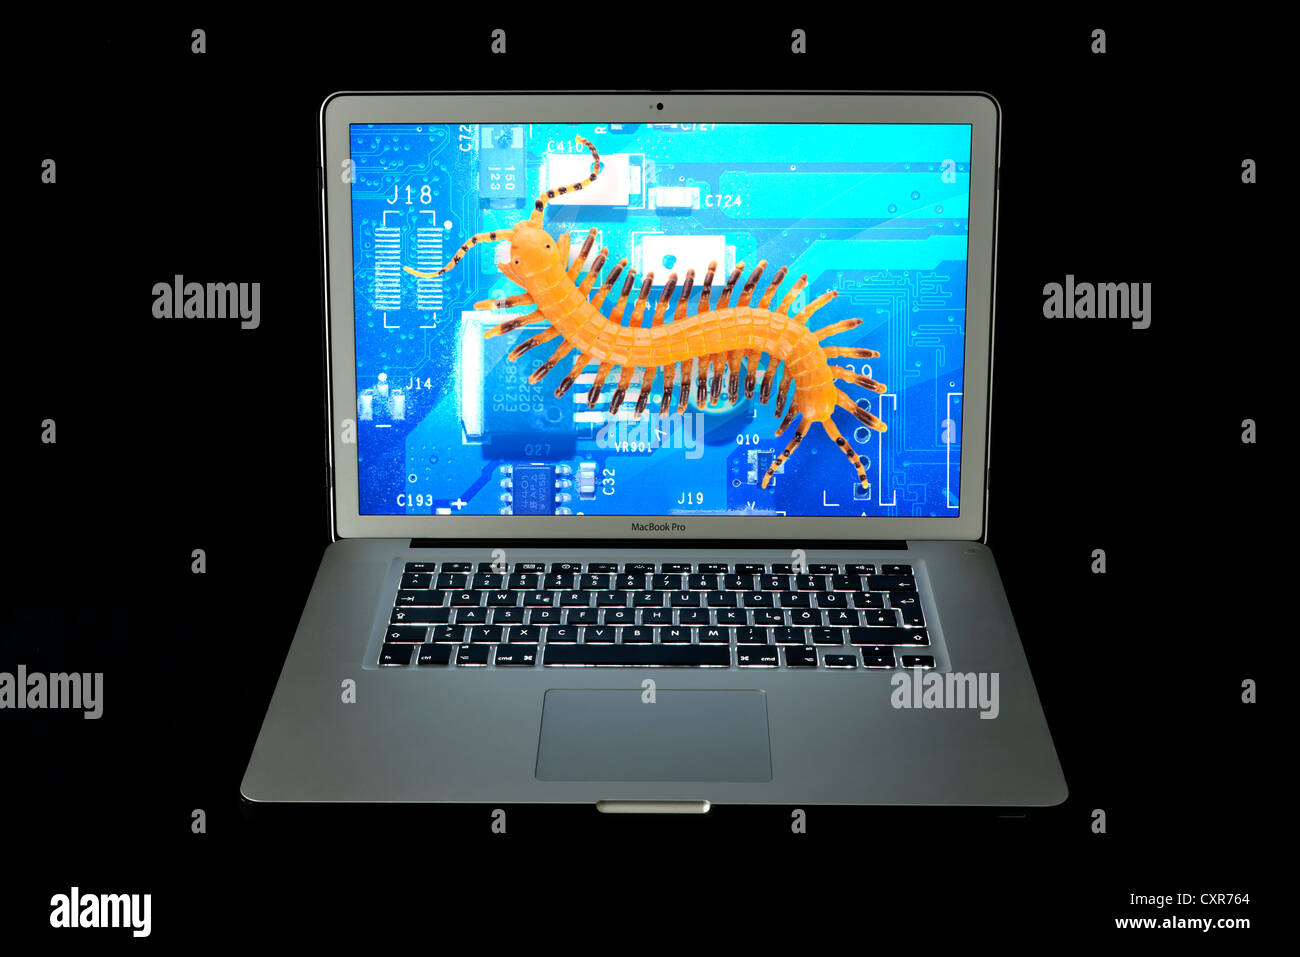 Advertencia de virus, virus, Apple MacBook Pro, el ordenador portátil Foto de stock